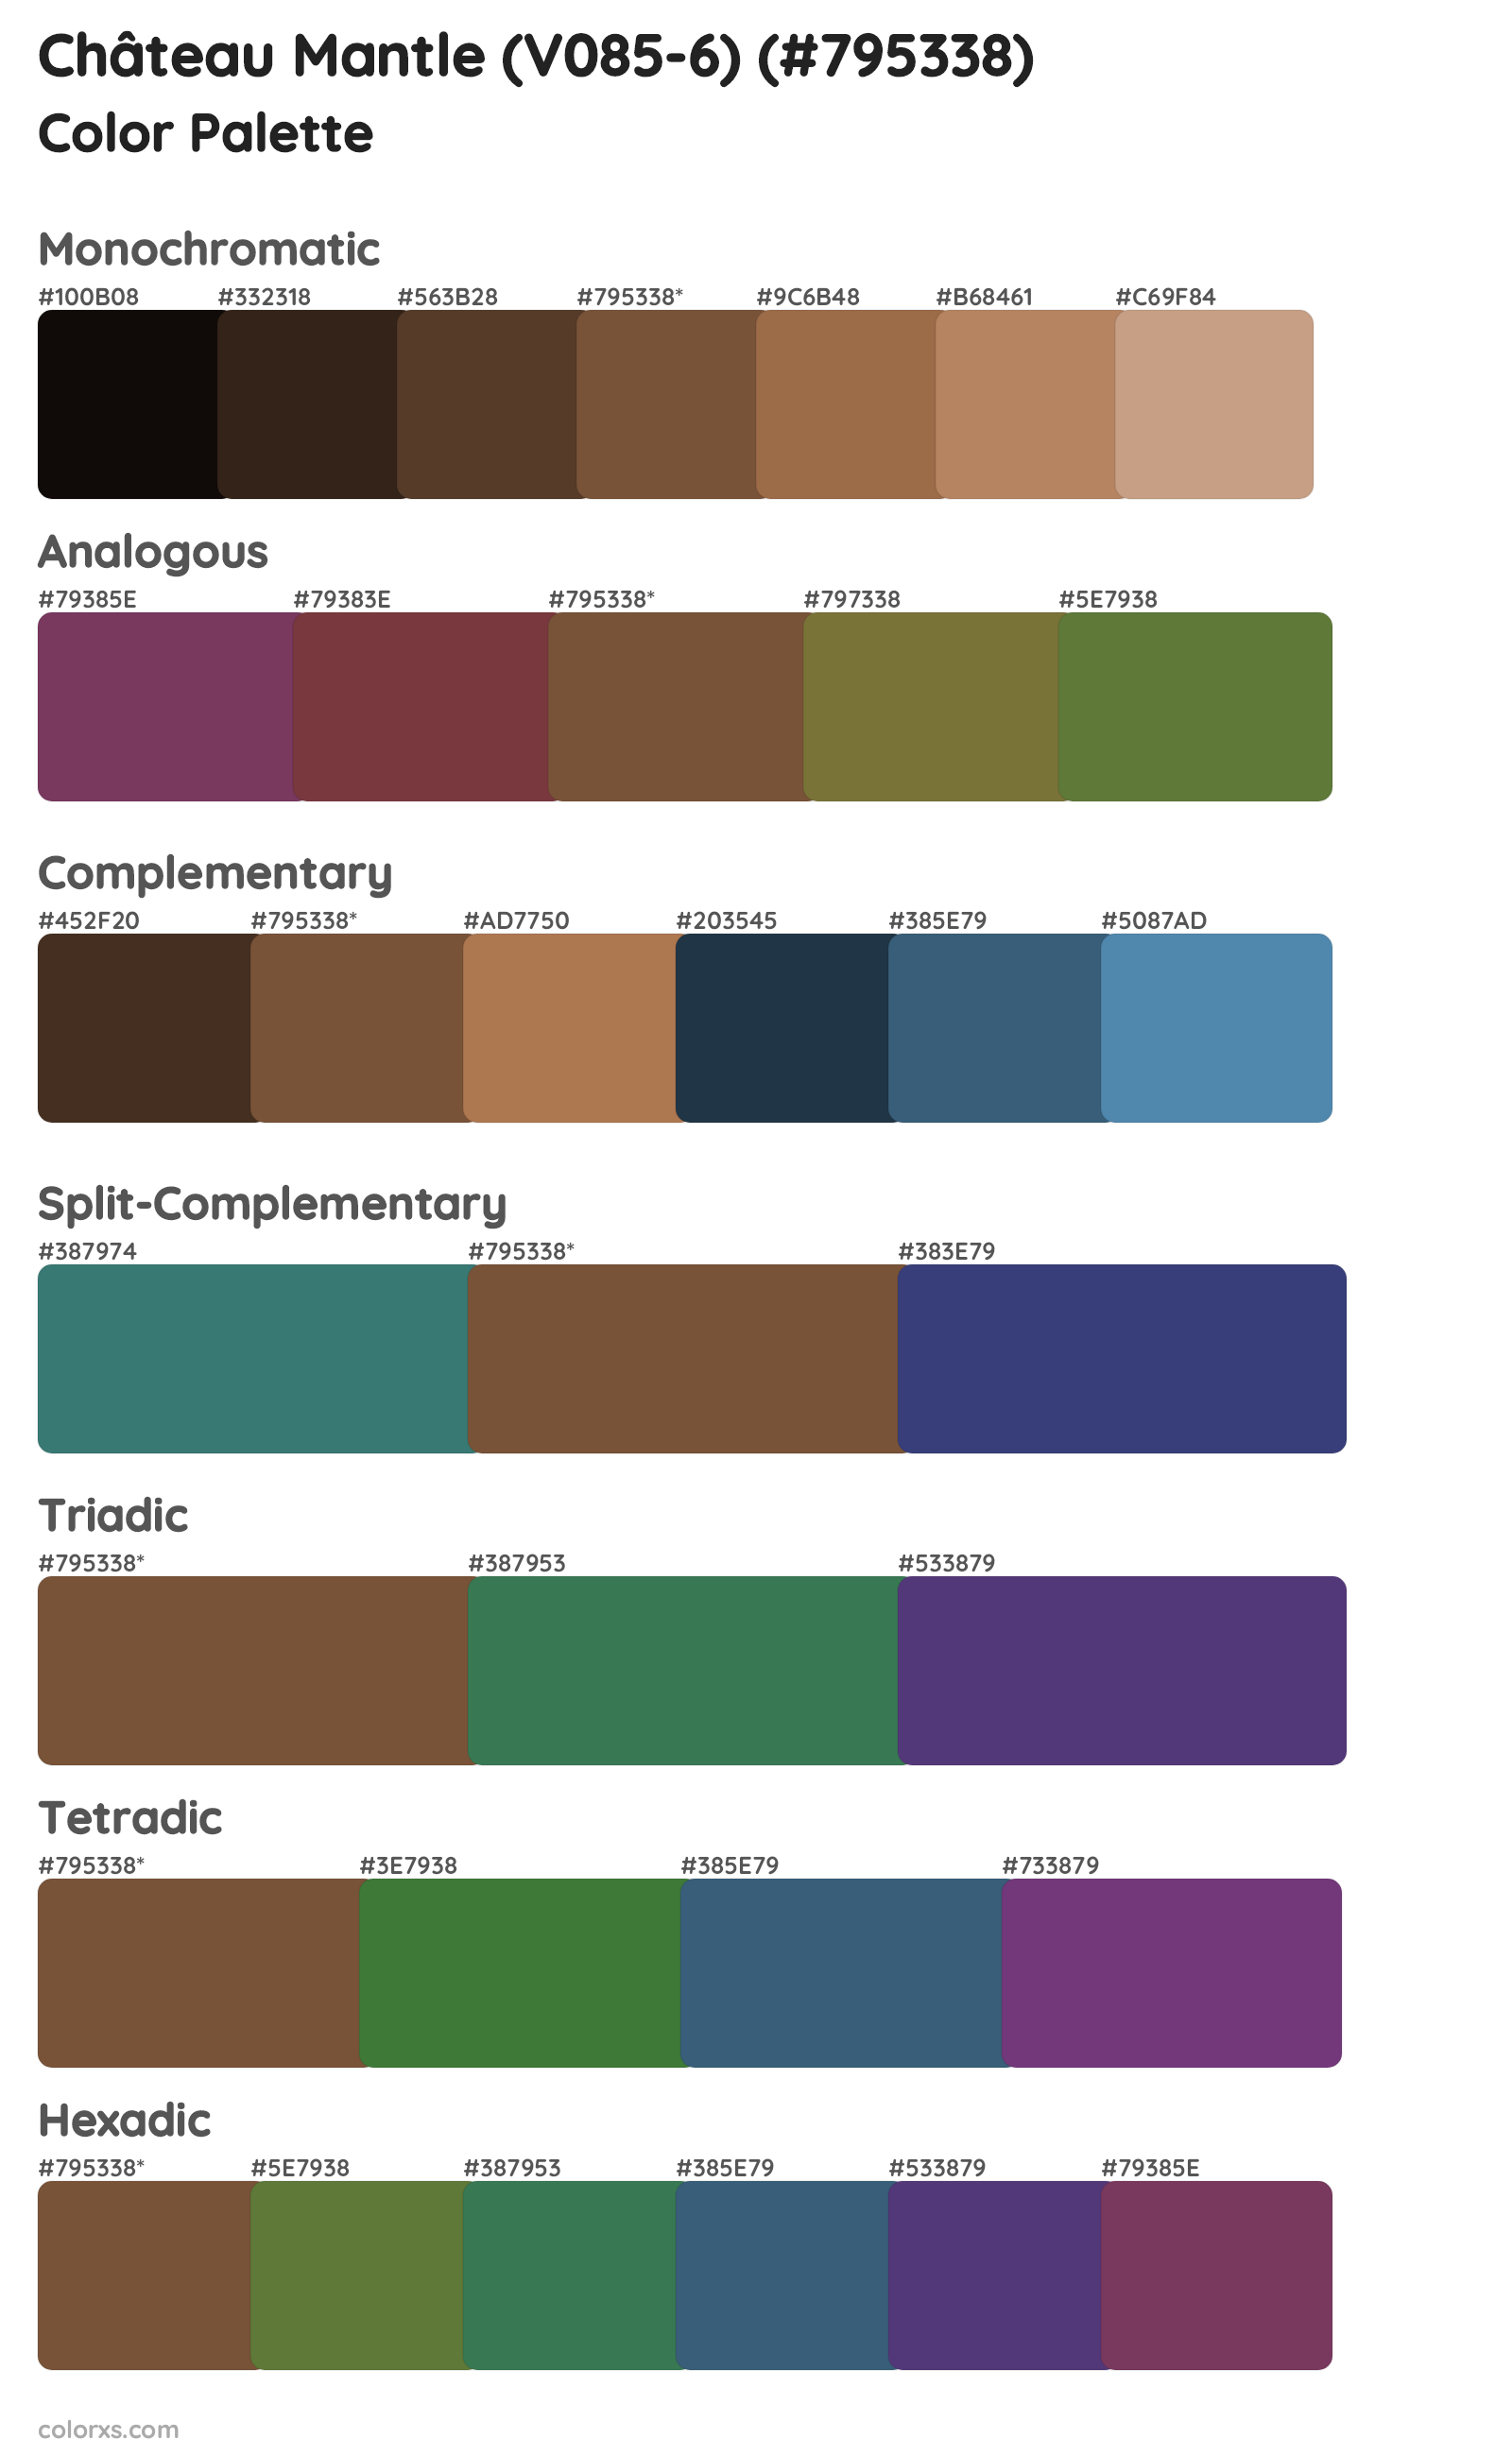 Château Mantle (V085-6) Color Scheme Palettes